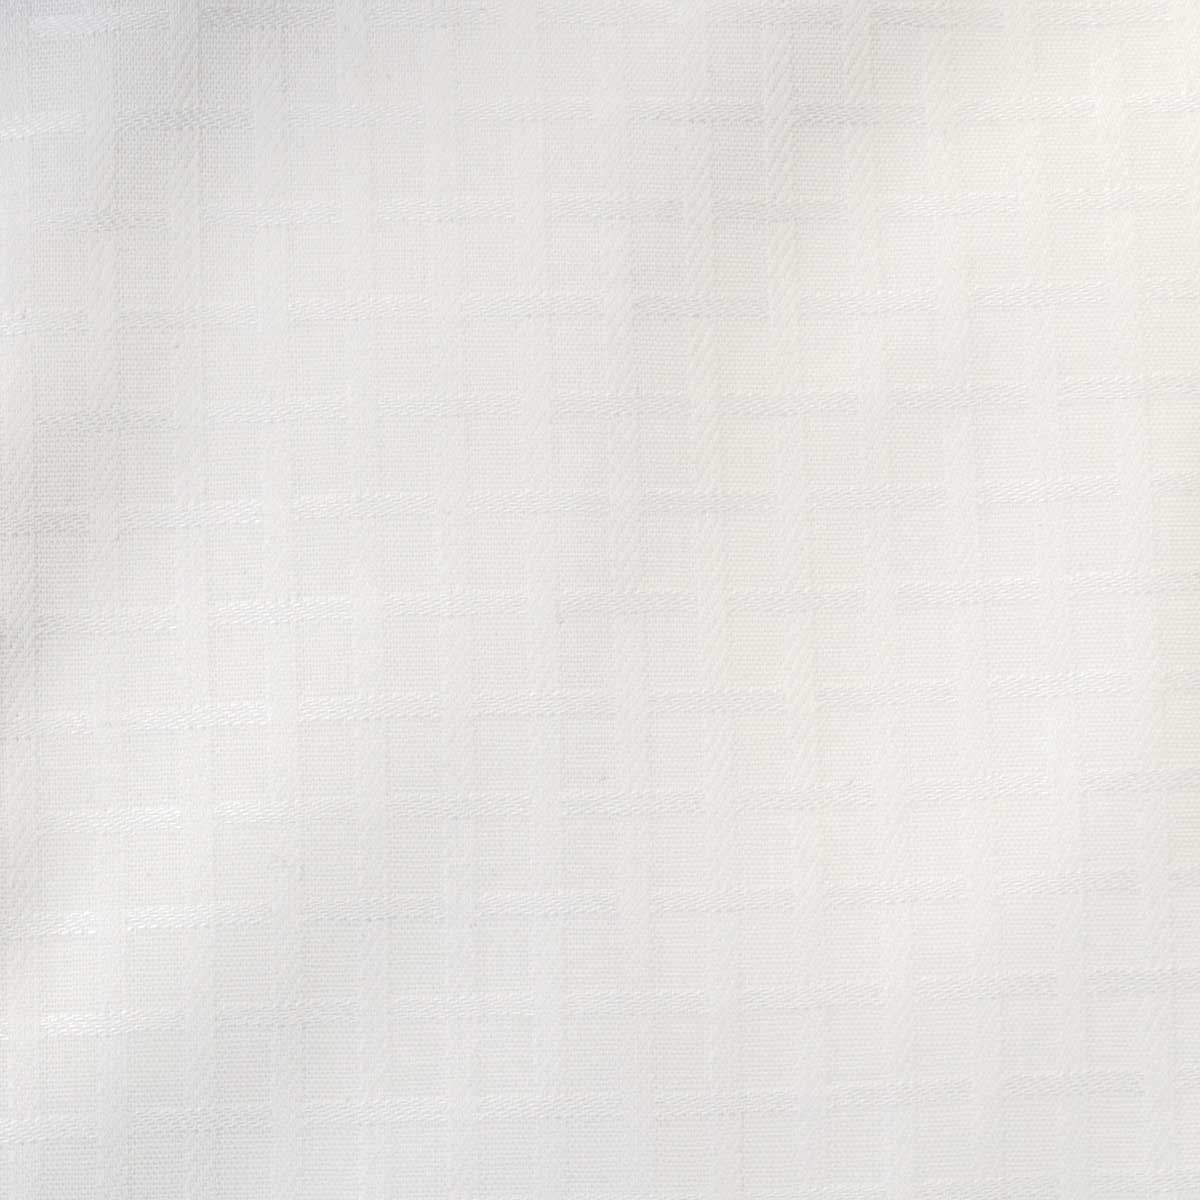 U.P renoma 半袖スリムフィット カッタウェイ ホワイト ワイシャツ